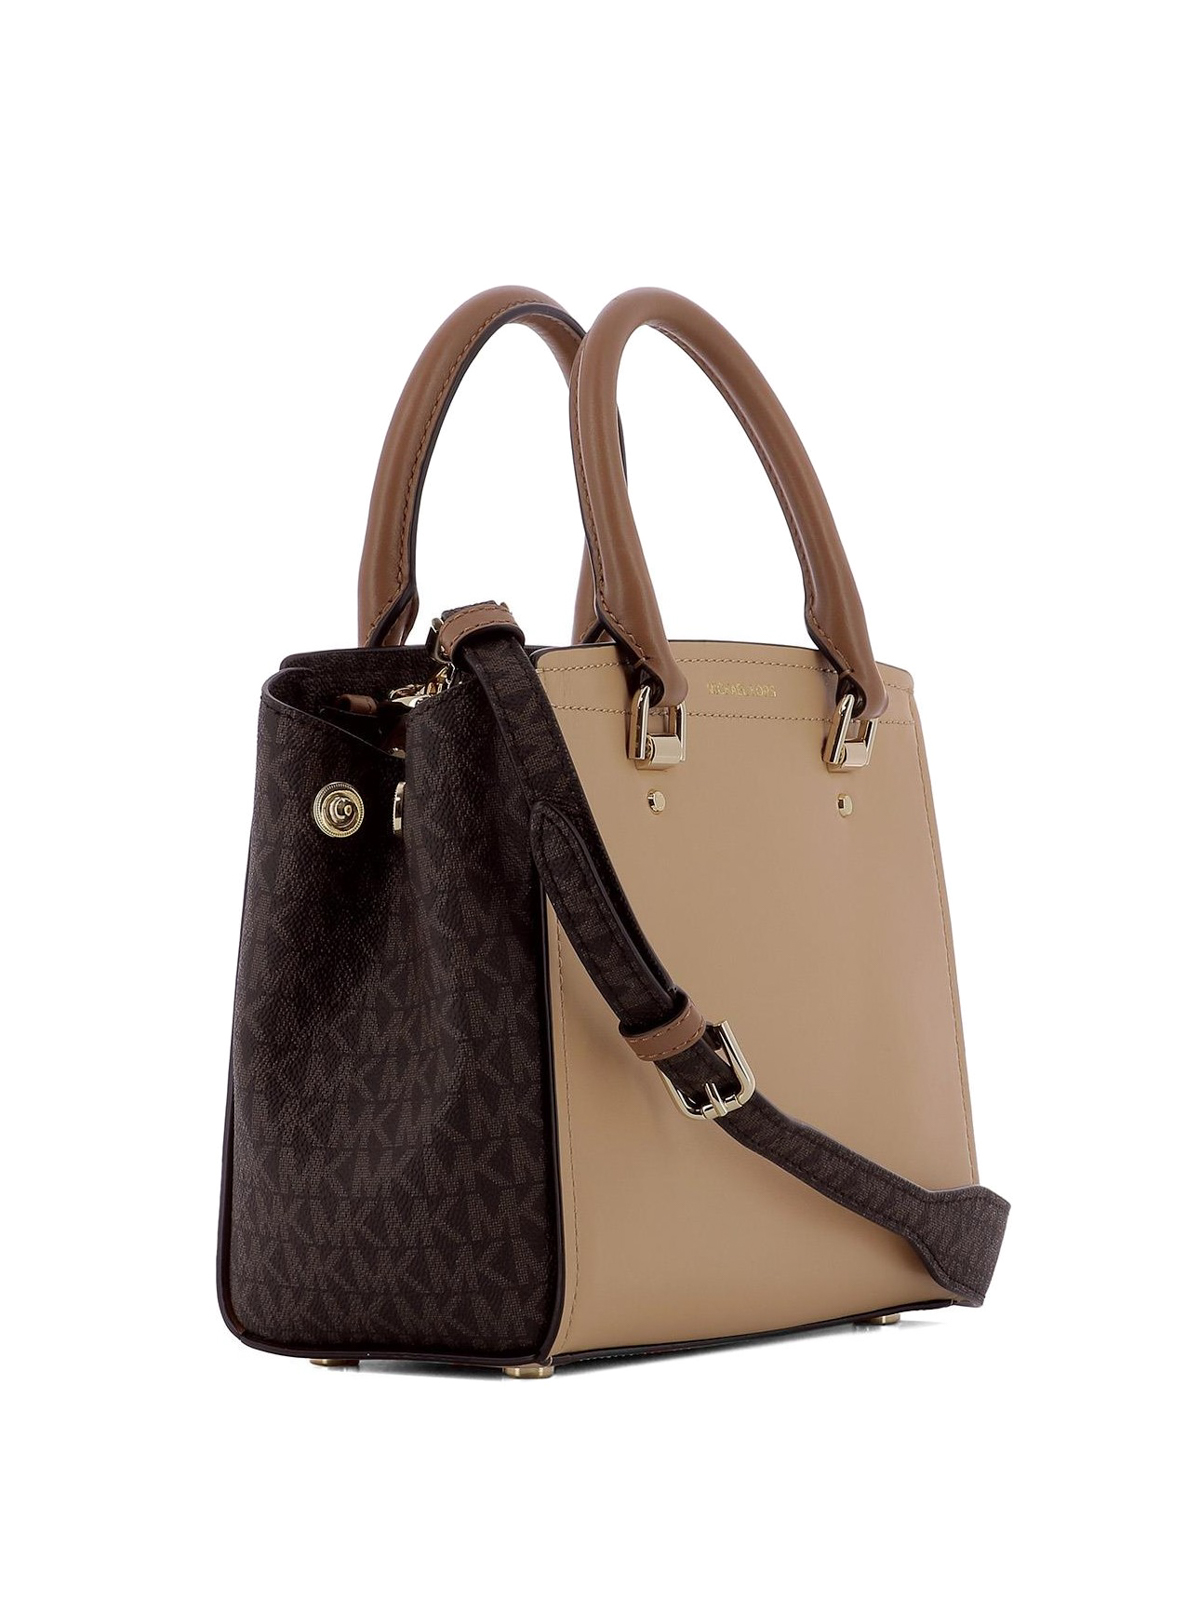 michael kors brown handbags